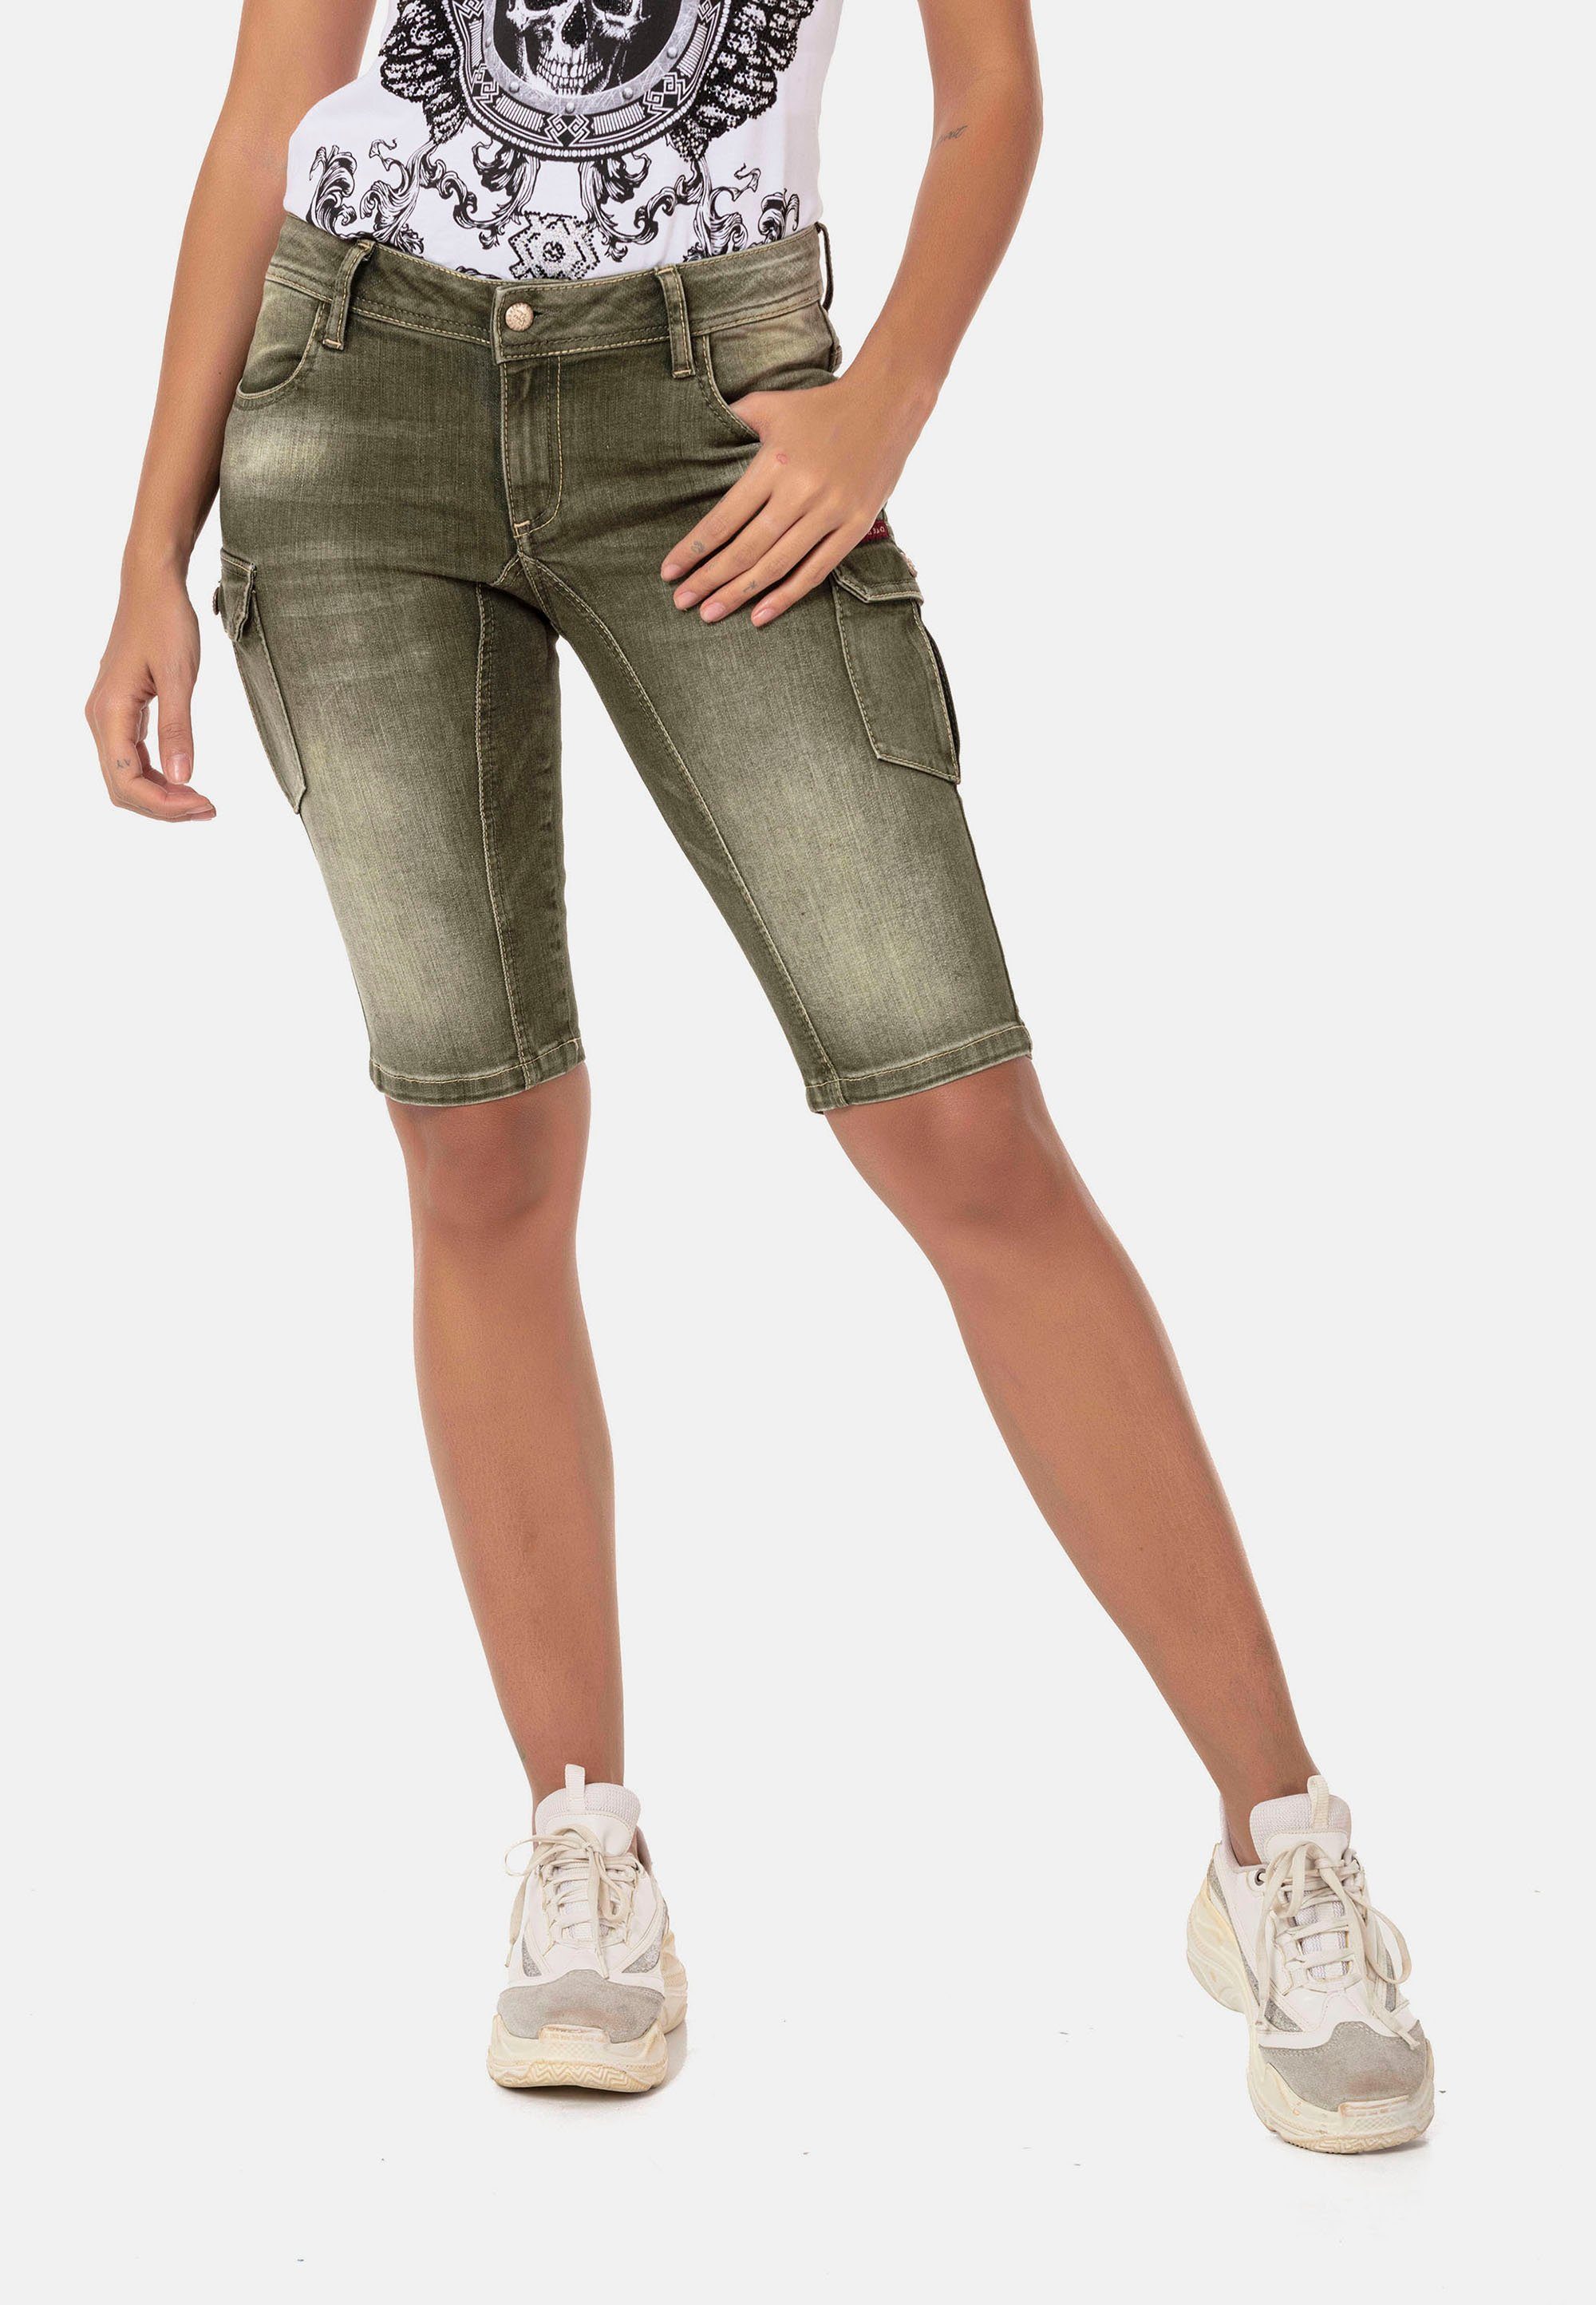 Grüne Damen-Shorts online kaufen | OTTO